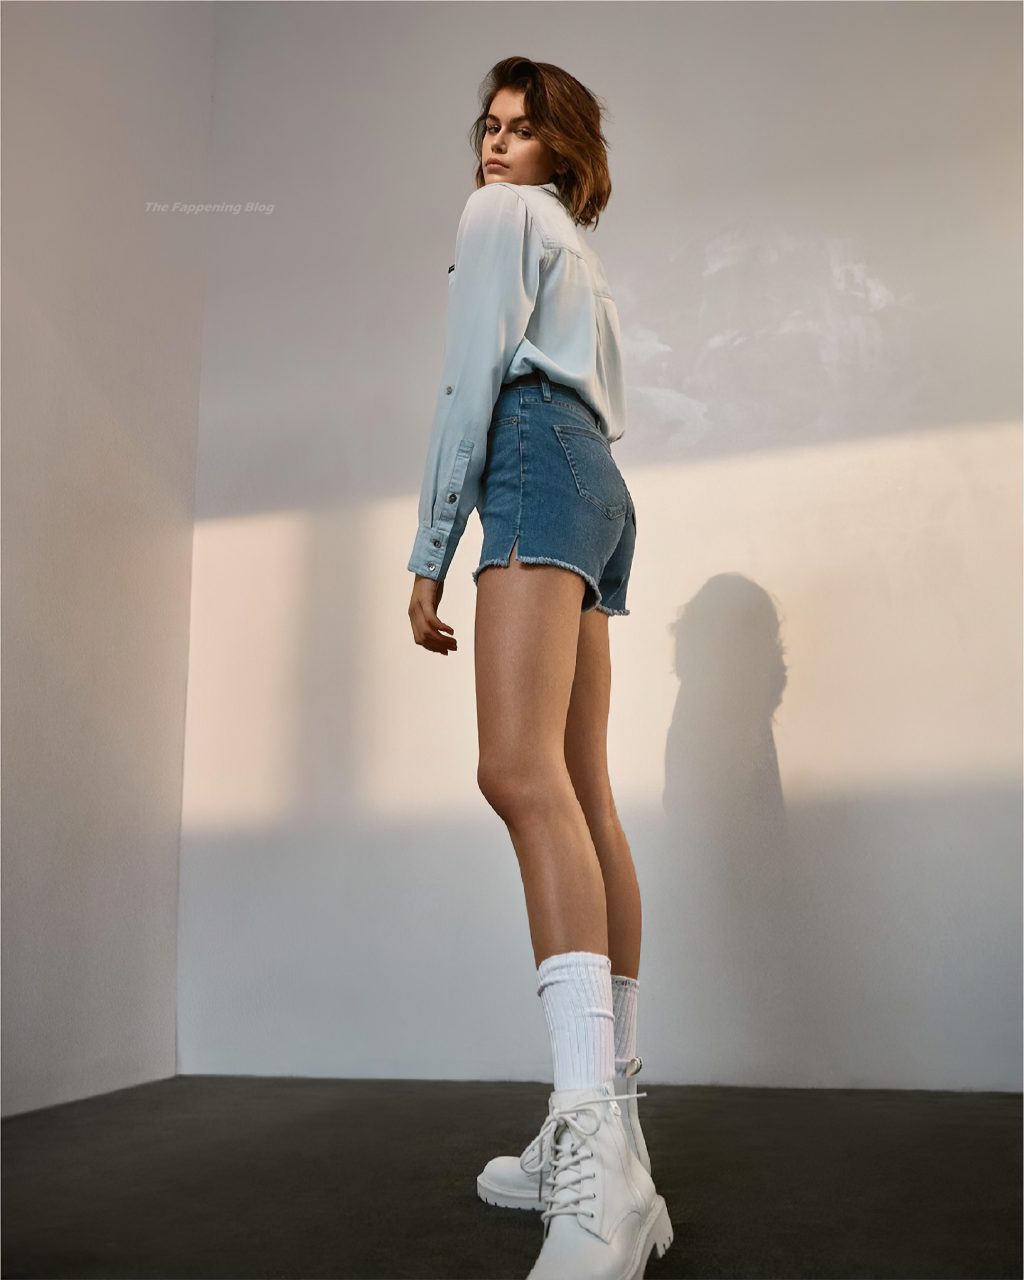 Kaia Gerber Poses for Calvin Klein (12 Photos)